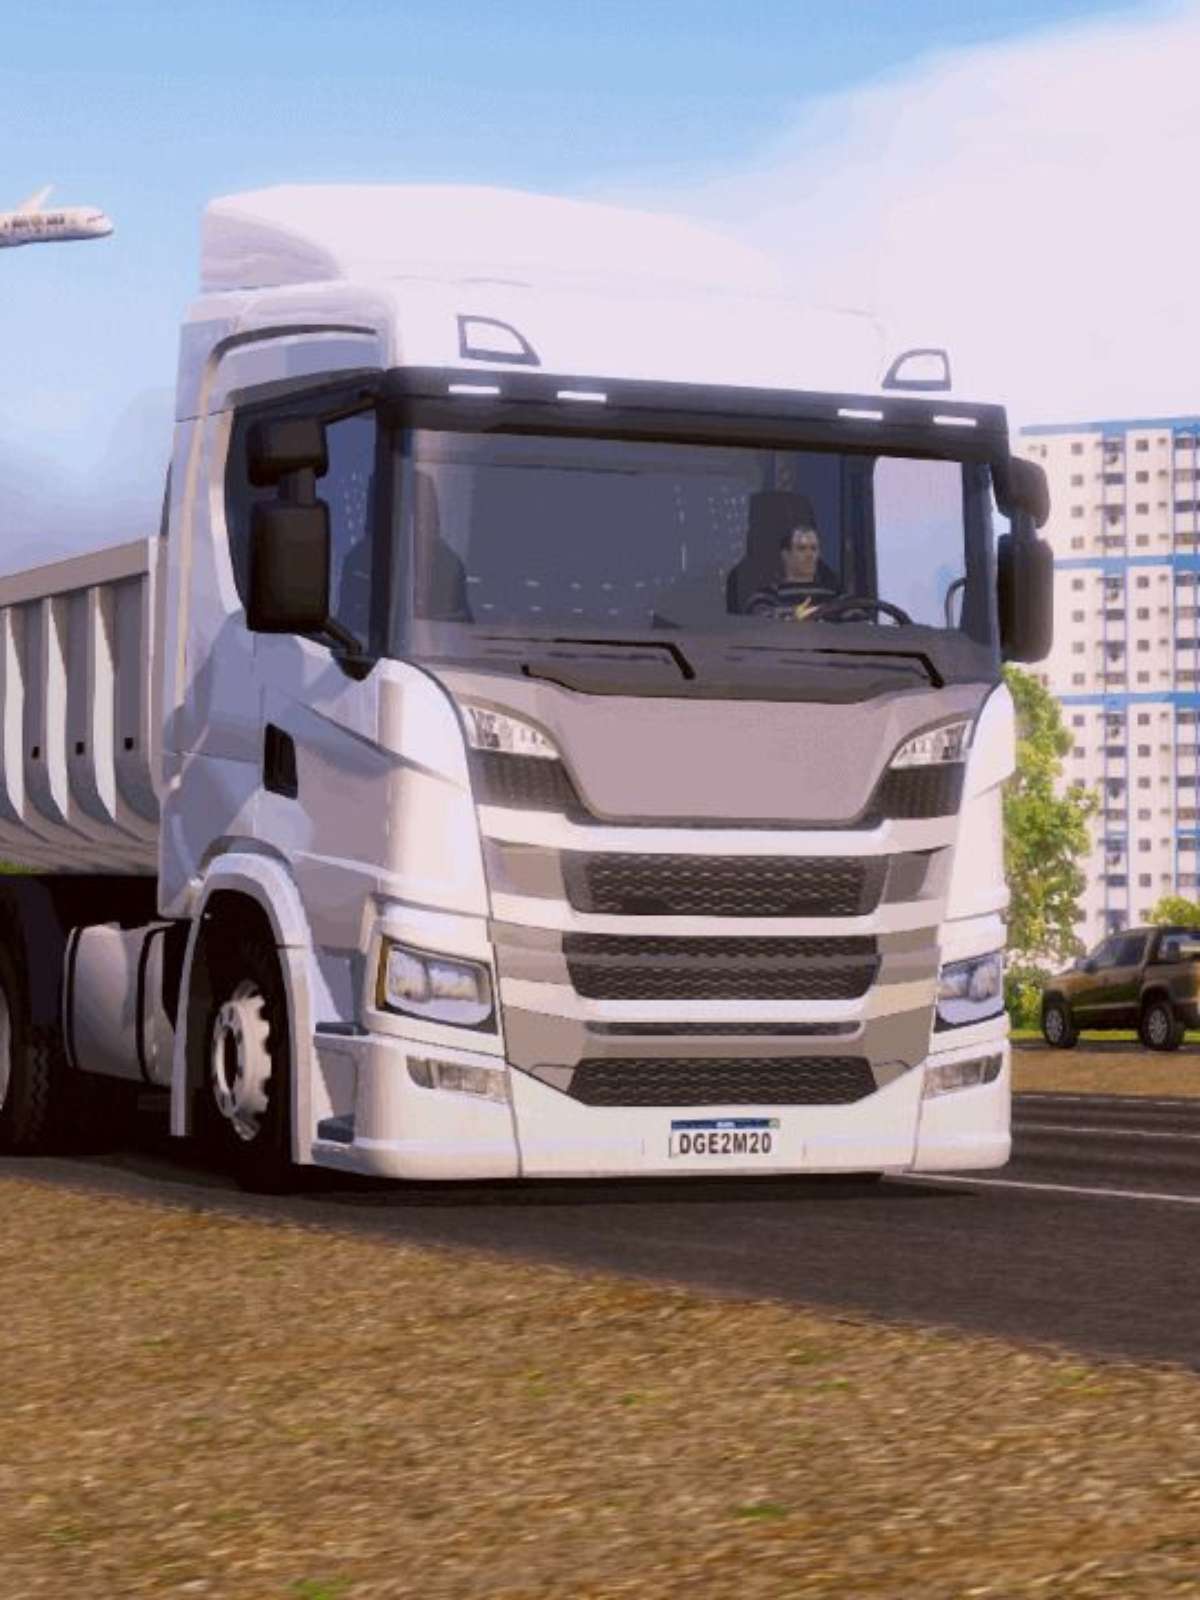 Jogos de caminhão simulador de caminhão dos EUA versão móvel